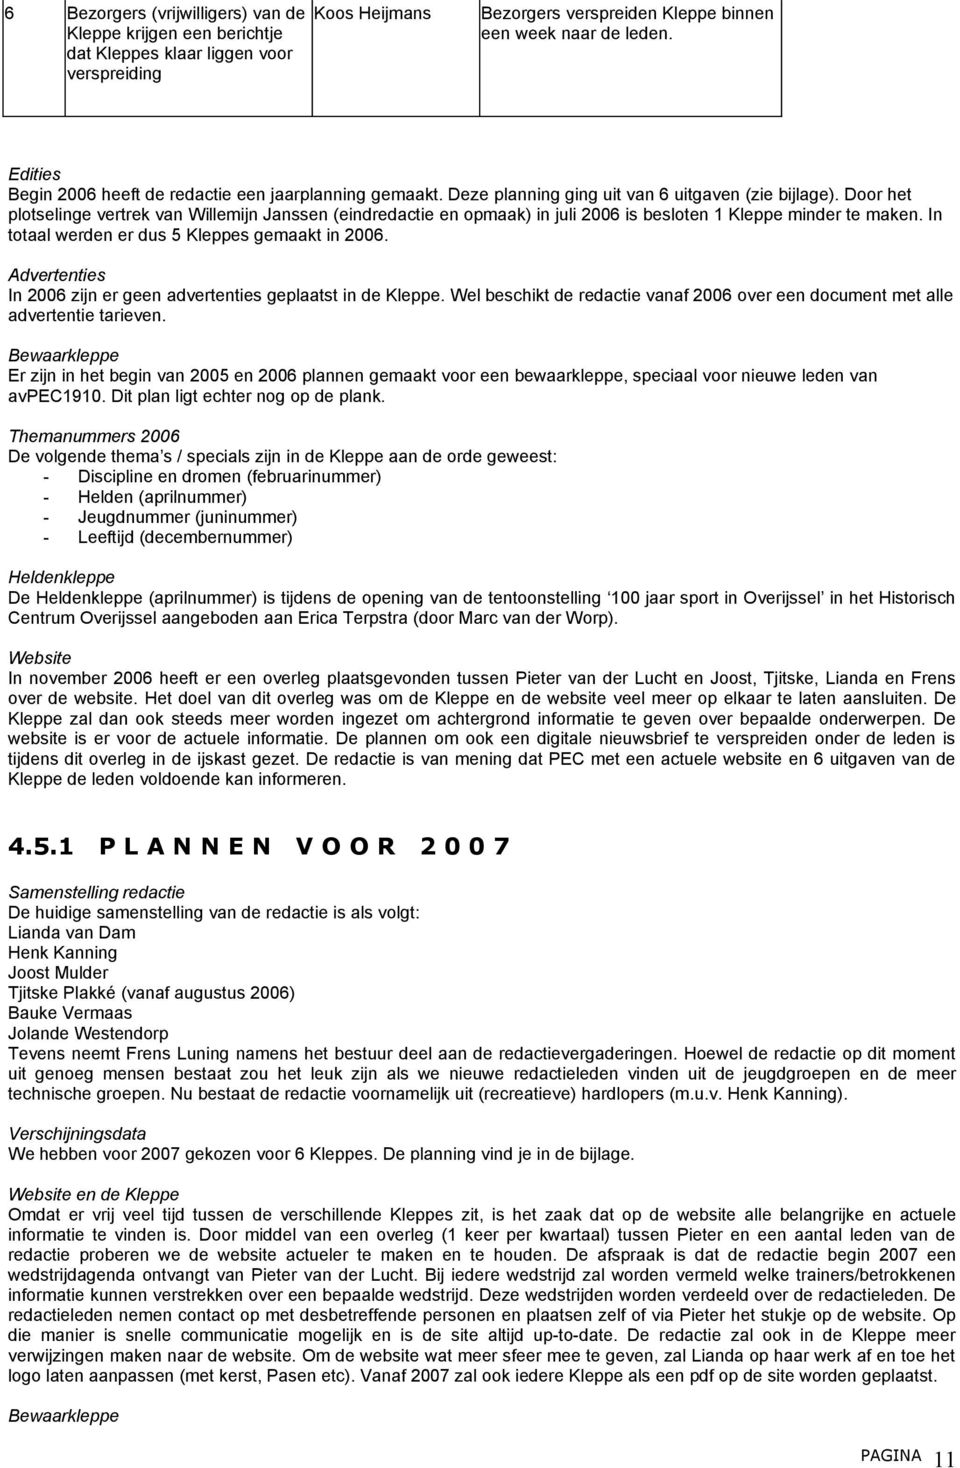 Door het plotselinge vertrek van Willemijn Janssen (eindredactie en opmaak) in juli 2006 is besloten 1 Kleppe minder te maken. In totaal werden er dus 5 Kleppes gemaakt in 2006.